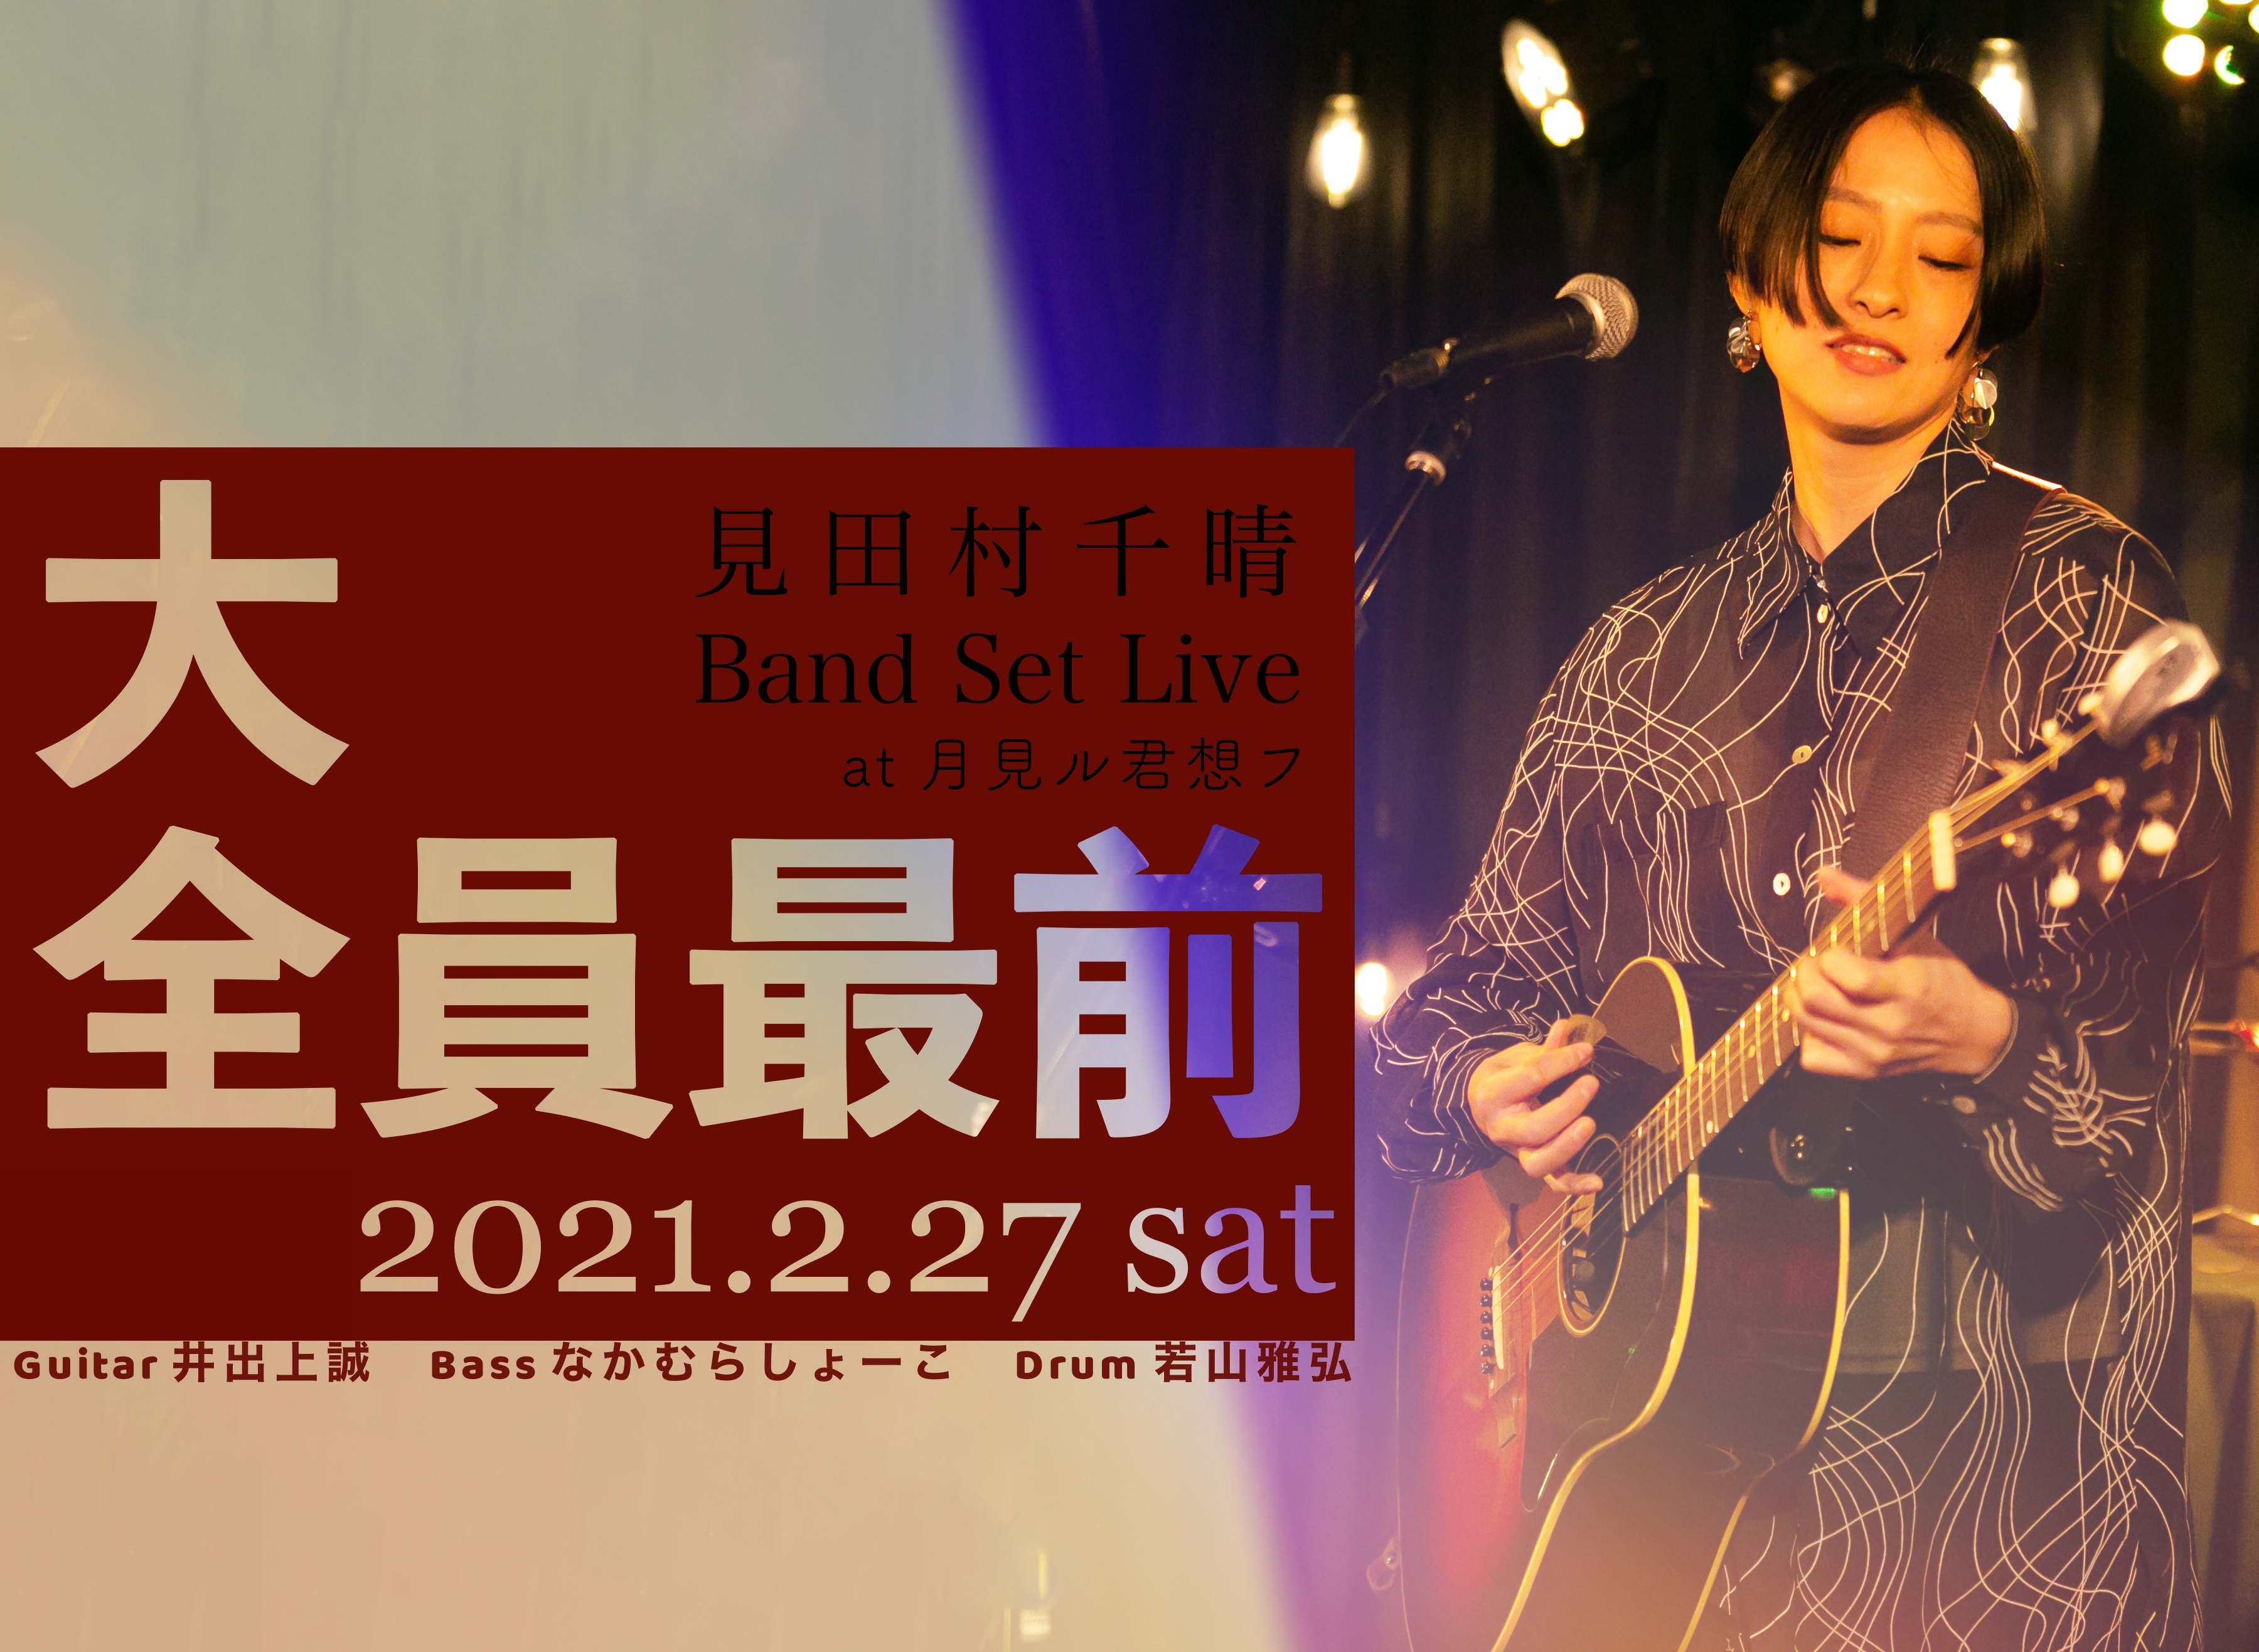 見田村千晴 Band Set Live「大全員最前」